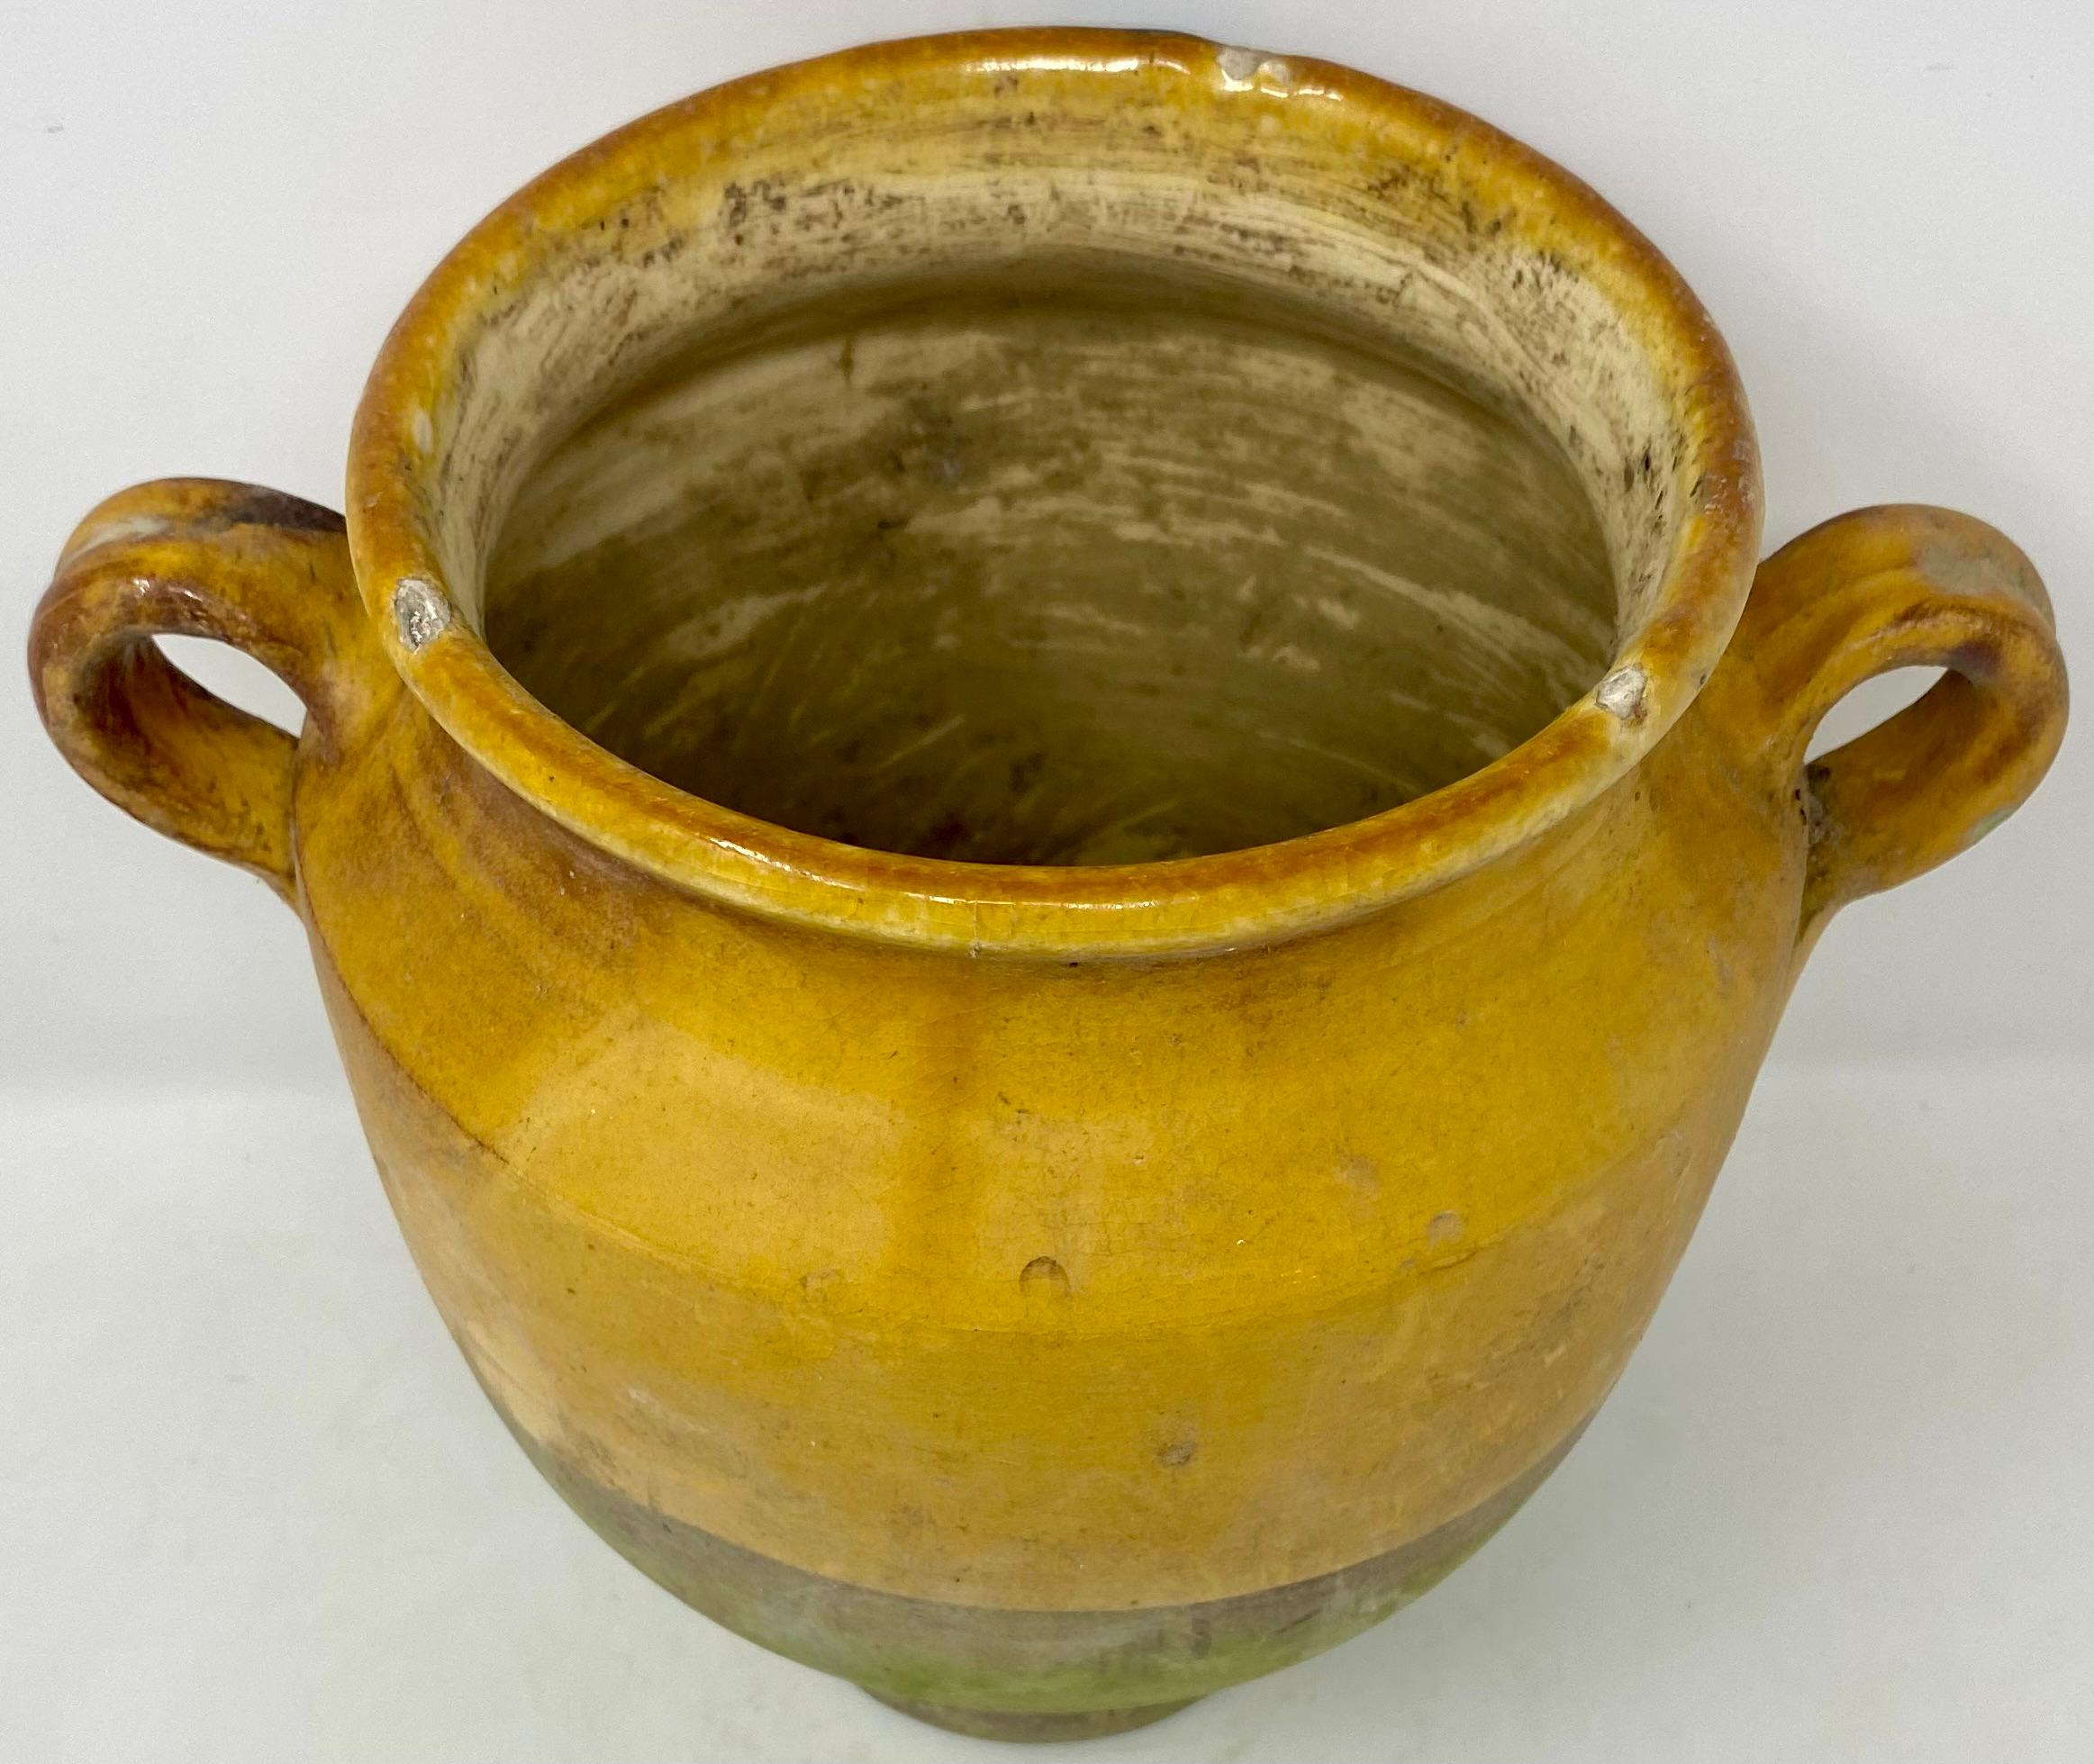 Vieux pot à confit de fabrication artisanale de style provincial français, en terre cuite émaillée jaune, avec poignées.
Sur la dernière photo, nous en avons quelques-uns de différentes tailles et formes. Chacun d'entre eux présente une usure